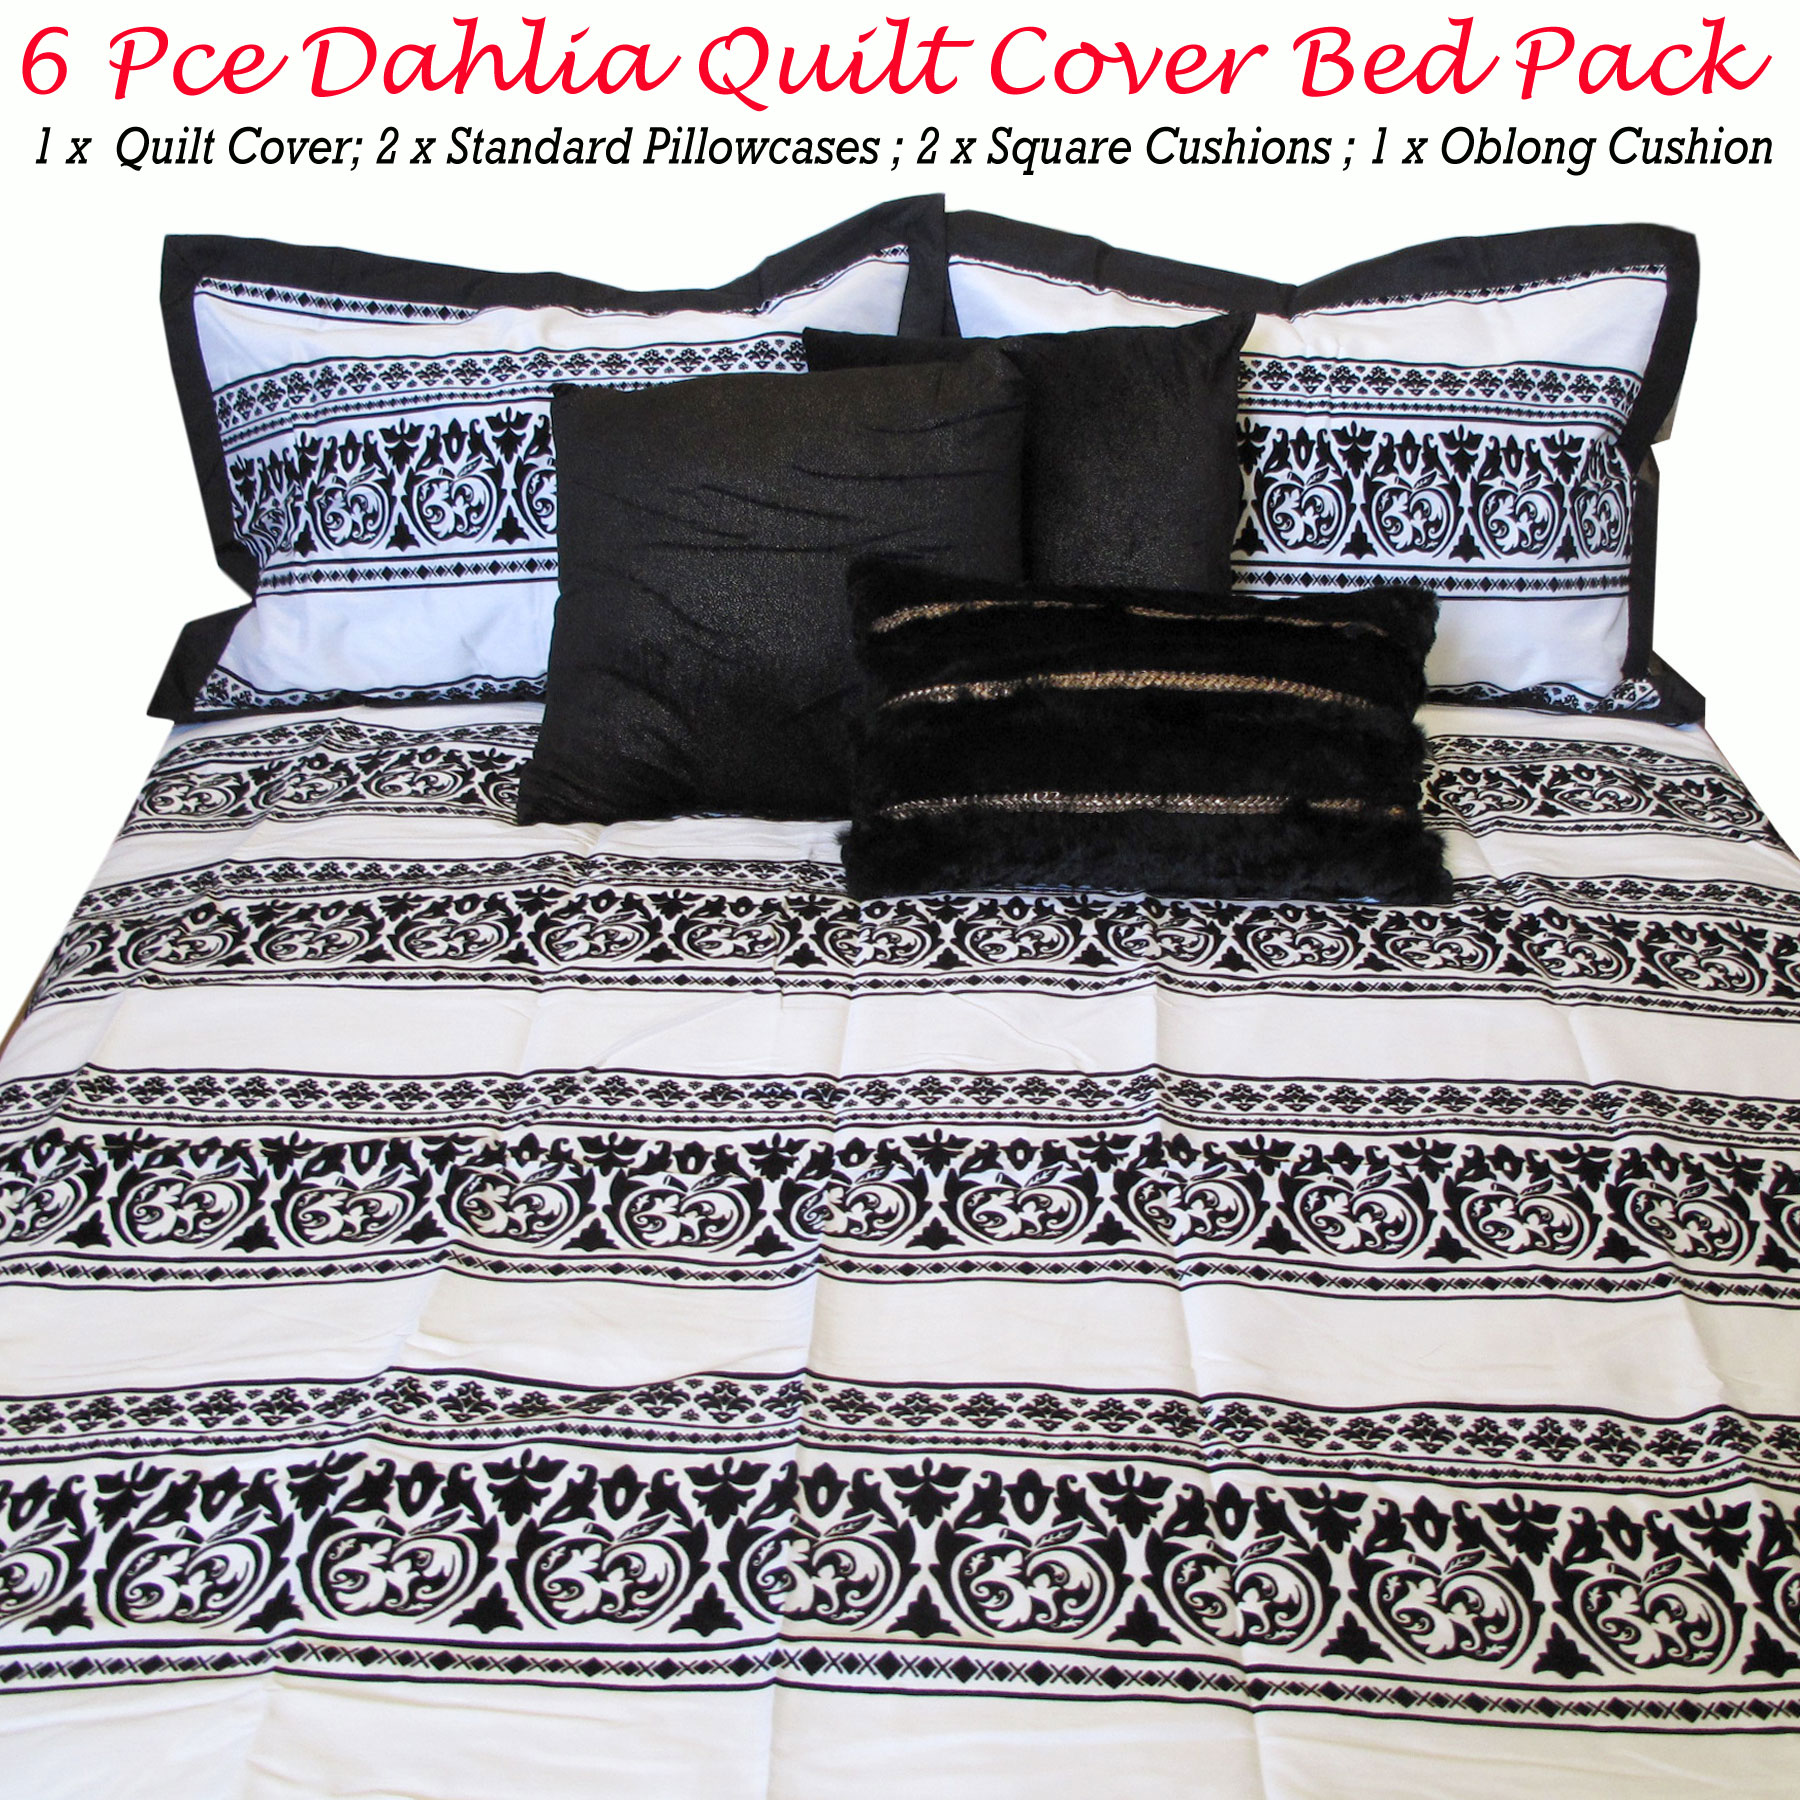 6 Pce Dahlia Black White Queen Quilt Cover 2 Pillowcase 3